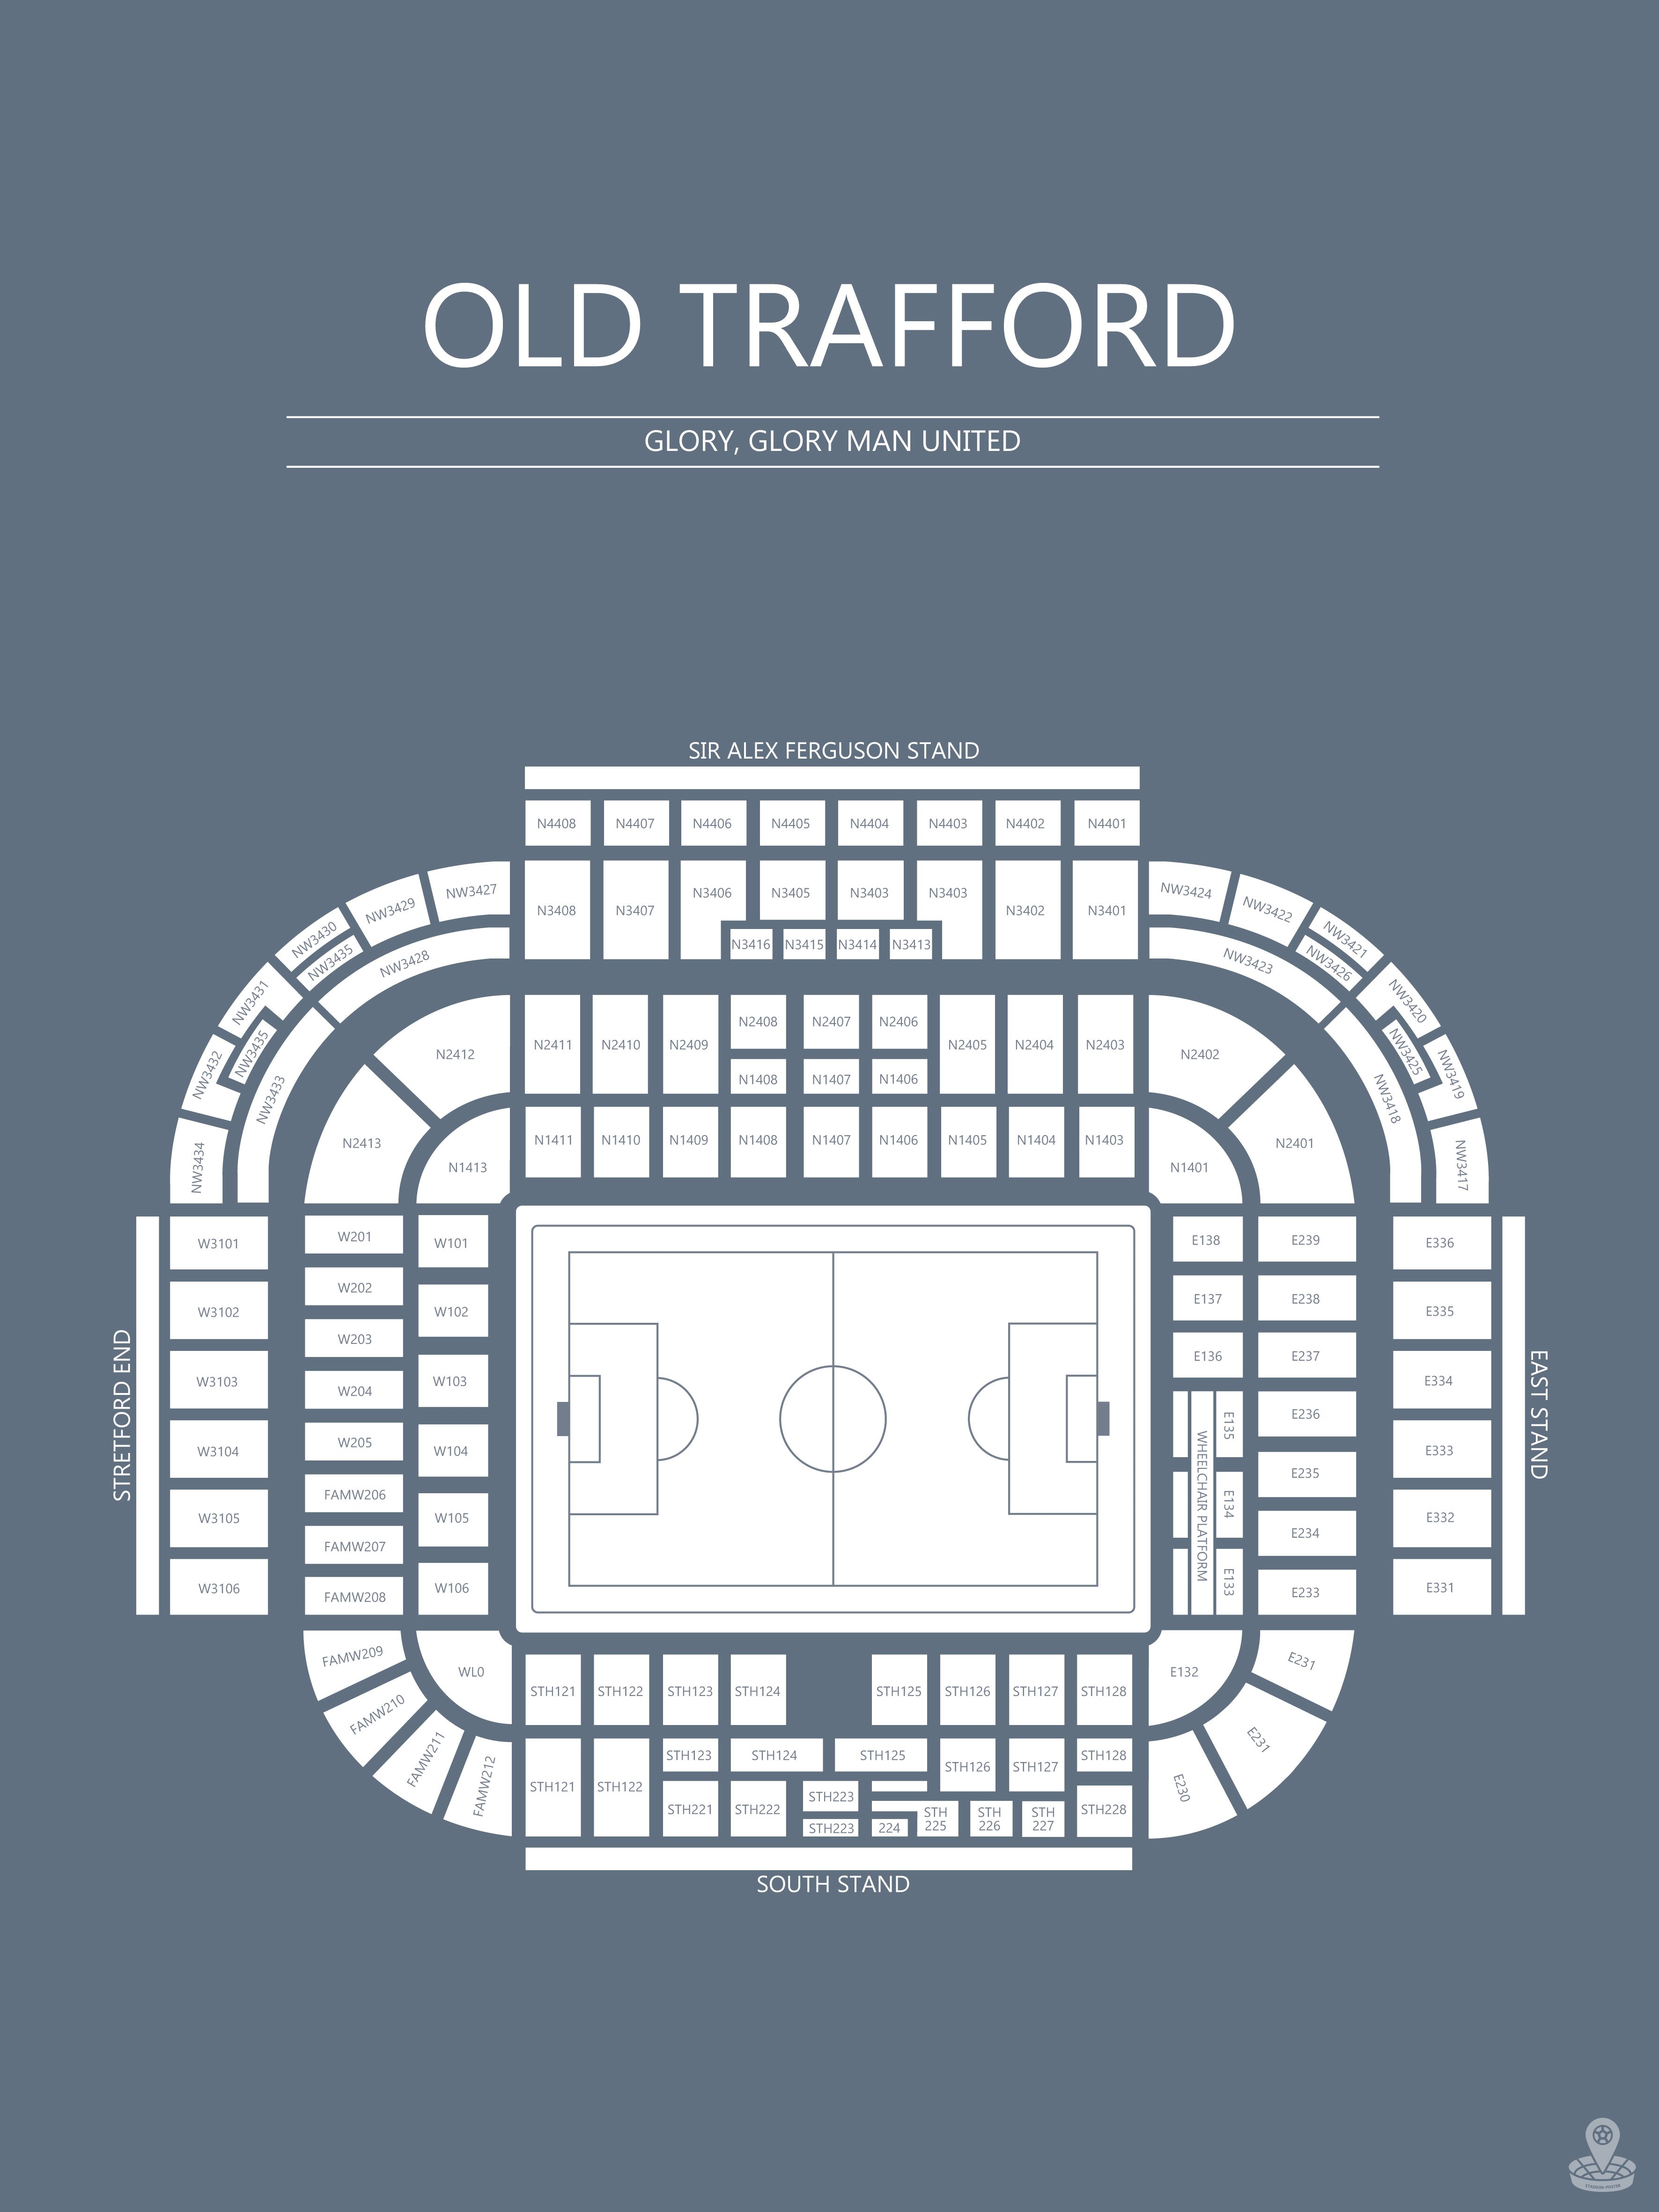 Fodbold plakat Manchester United Old Trafford gråblå